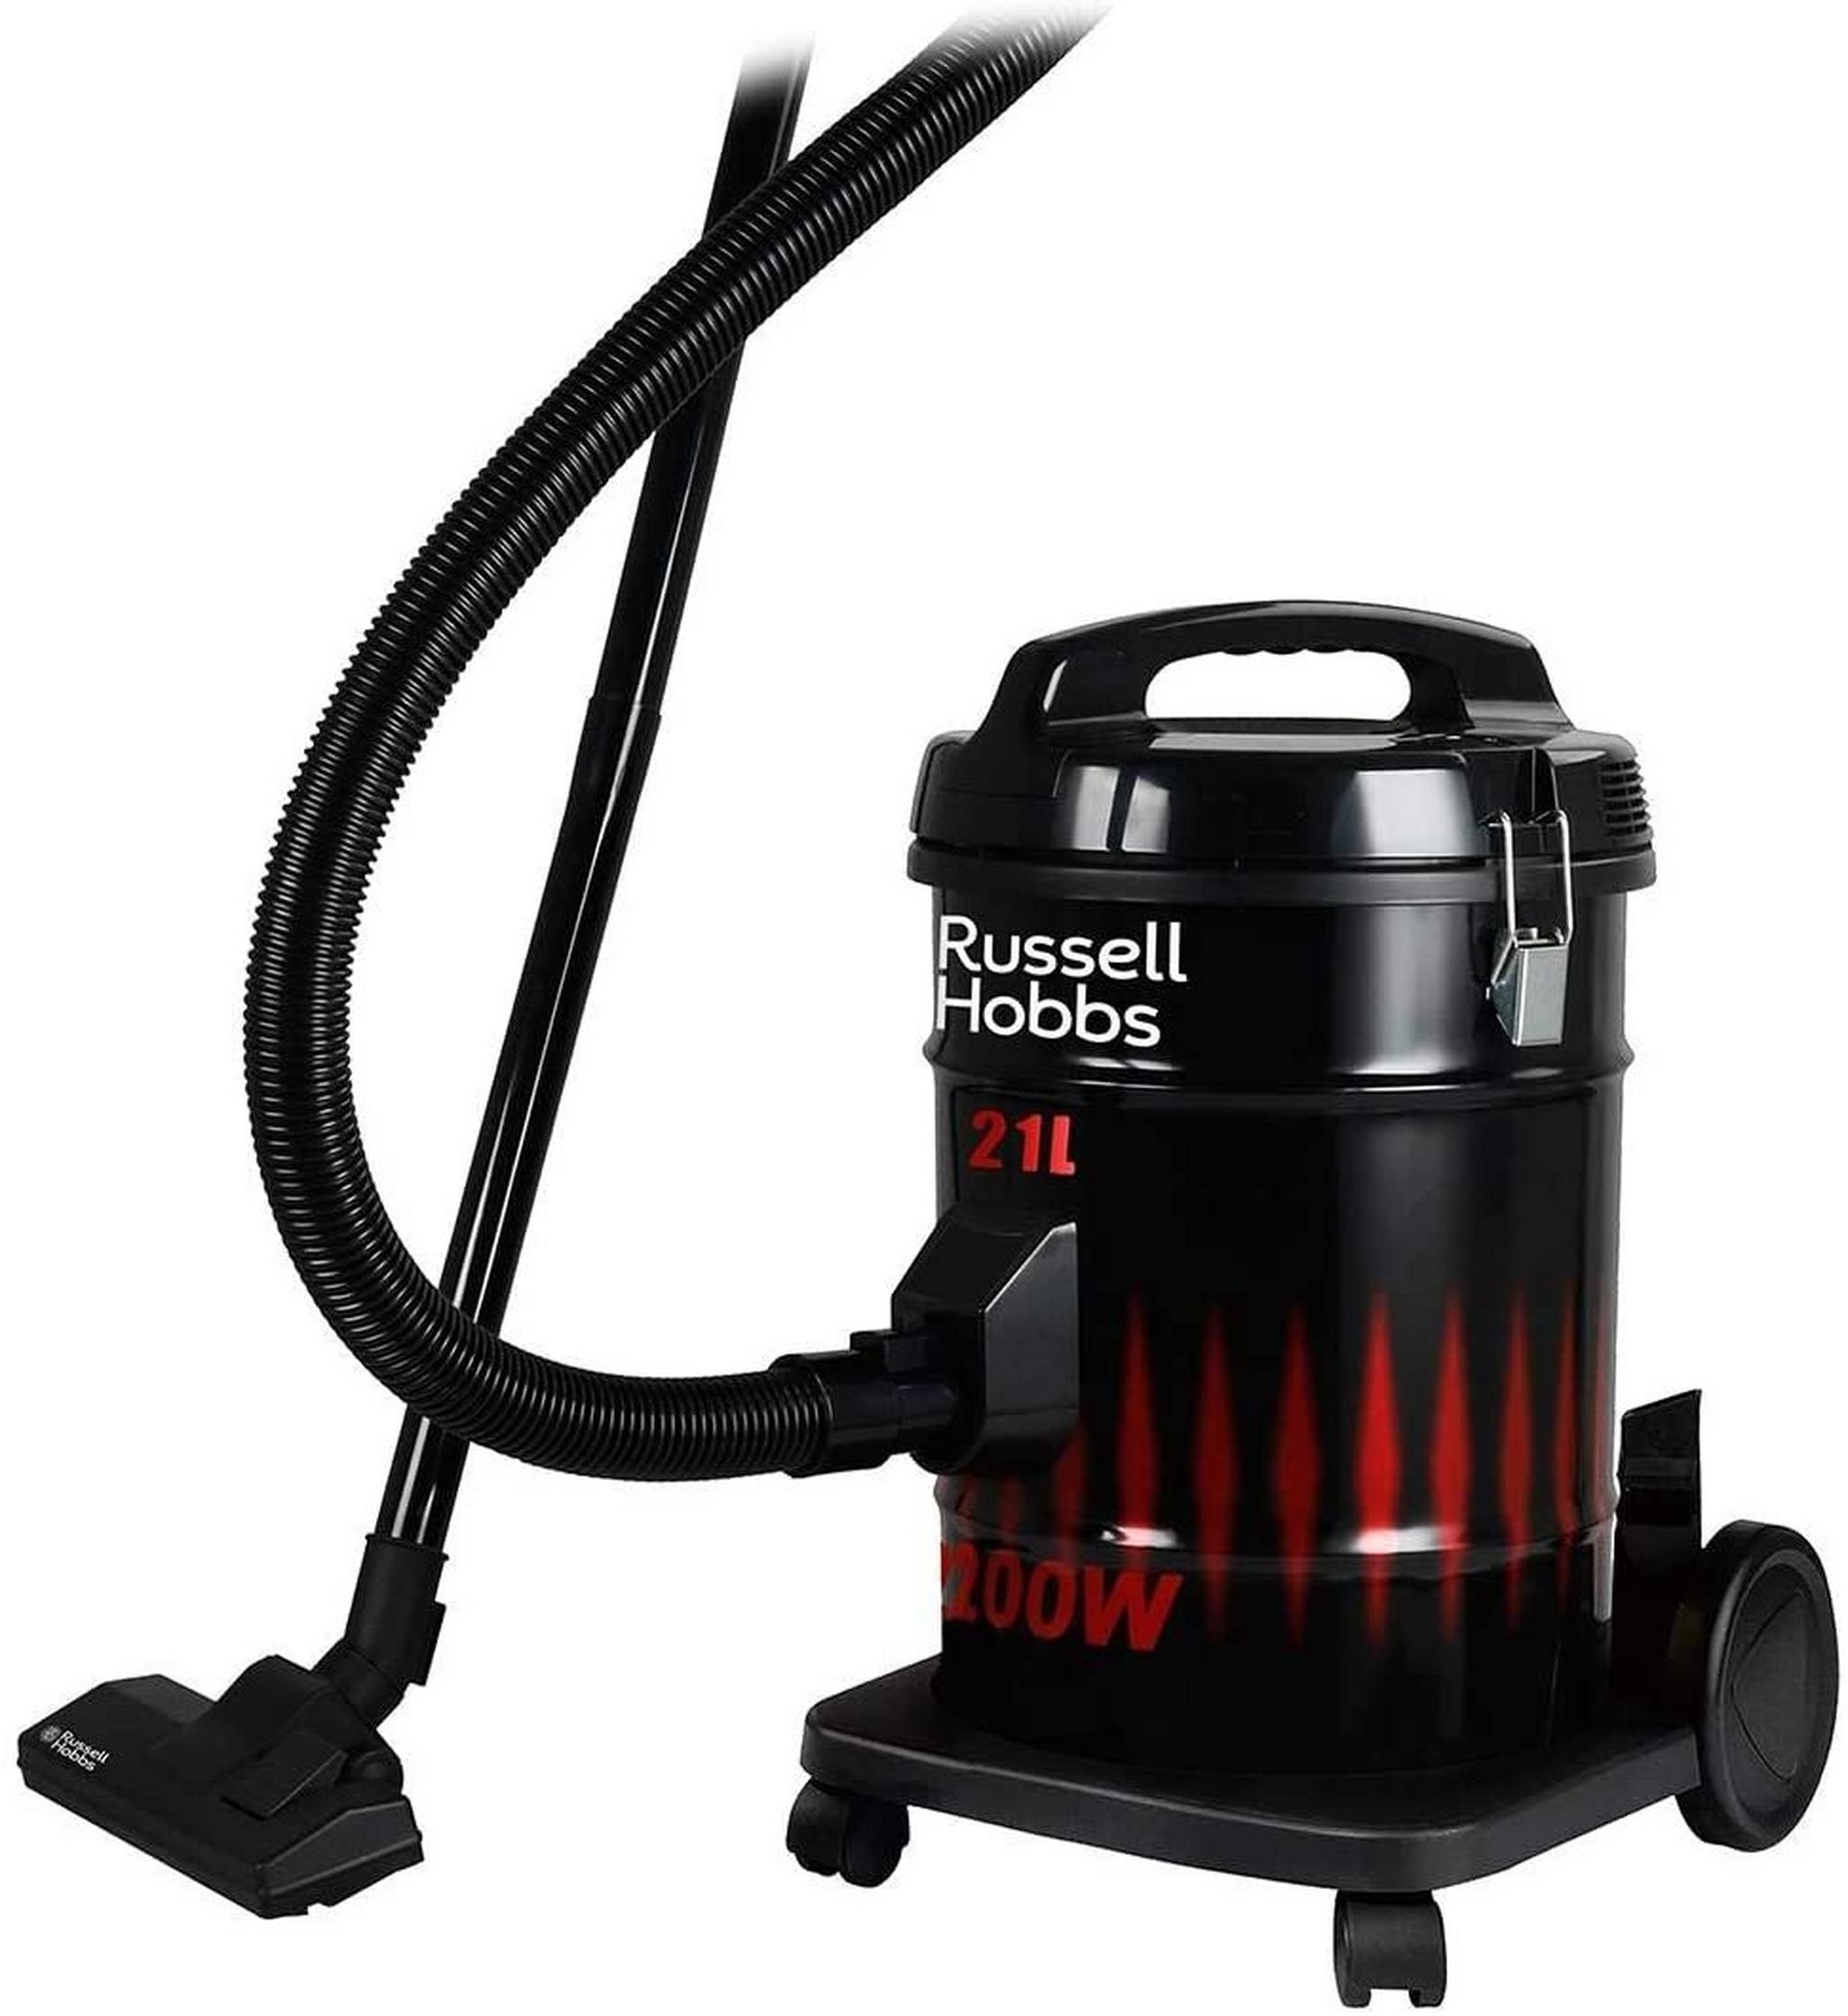 Russell Hobbs 2X Heavy Duty Vacuum Cleaner, 2200W, 21 Liters, - Black/Red